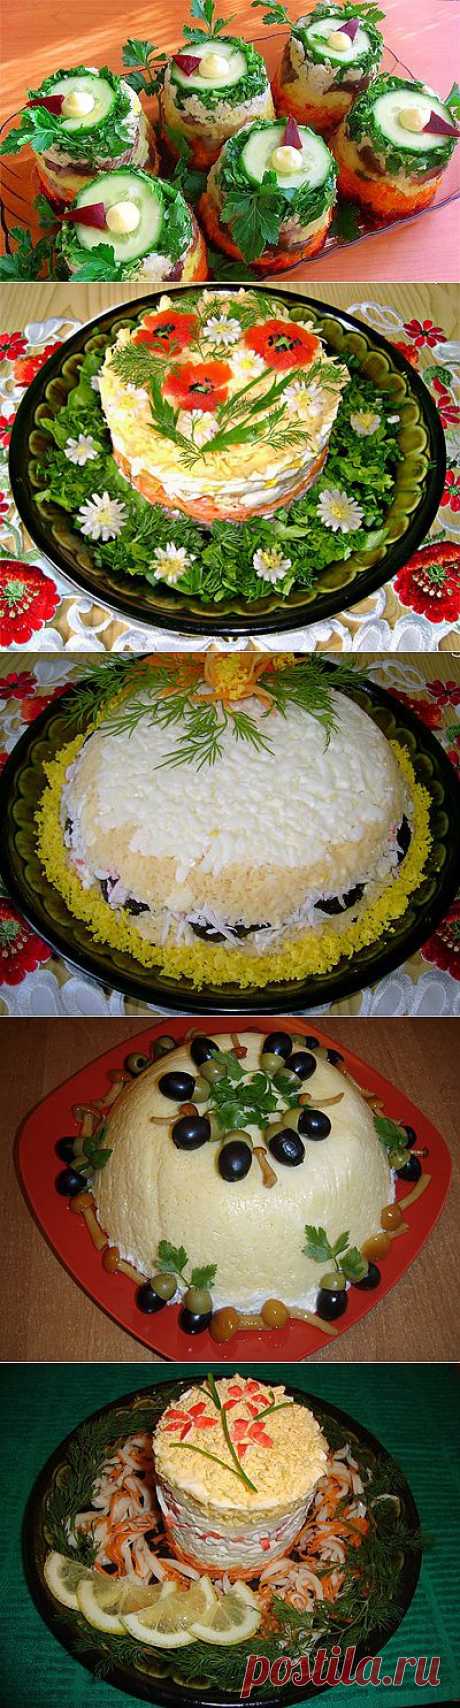 Красивые салаты. Удивляем гостей вкусными и красиво оформленными блюдами - Простые рецепты Овкусе.ру